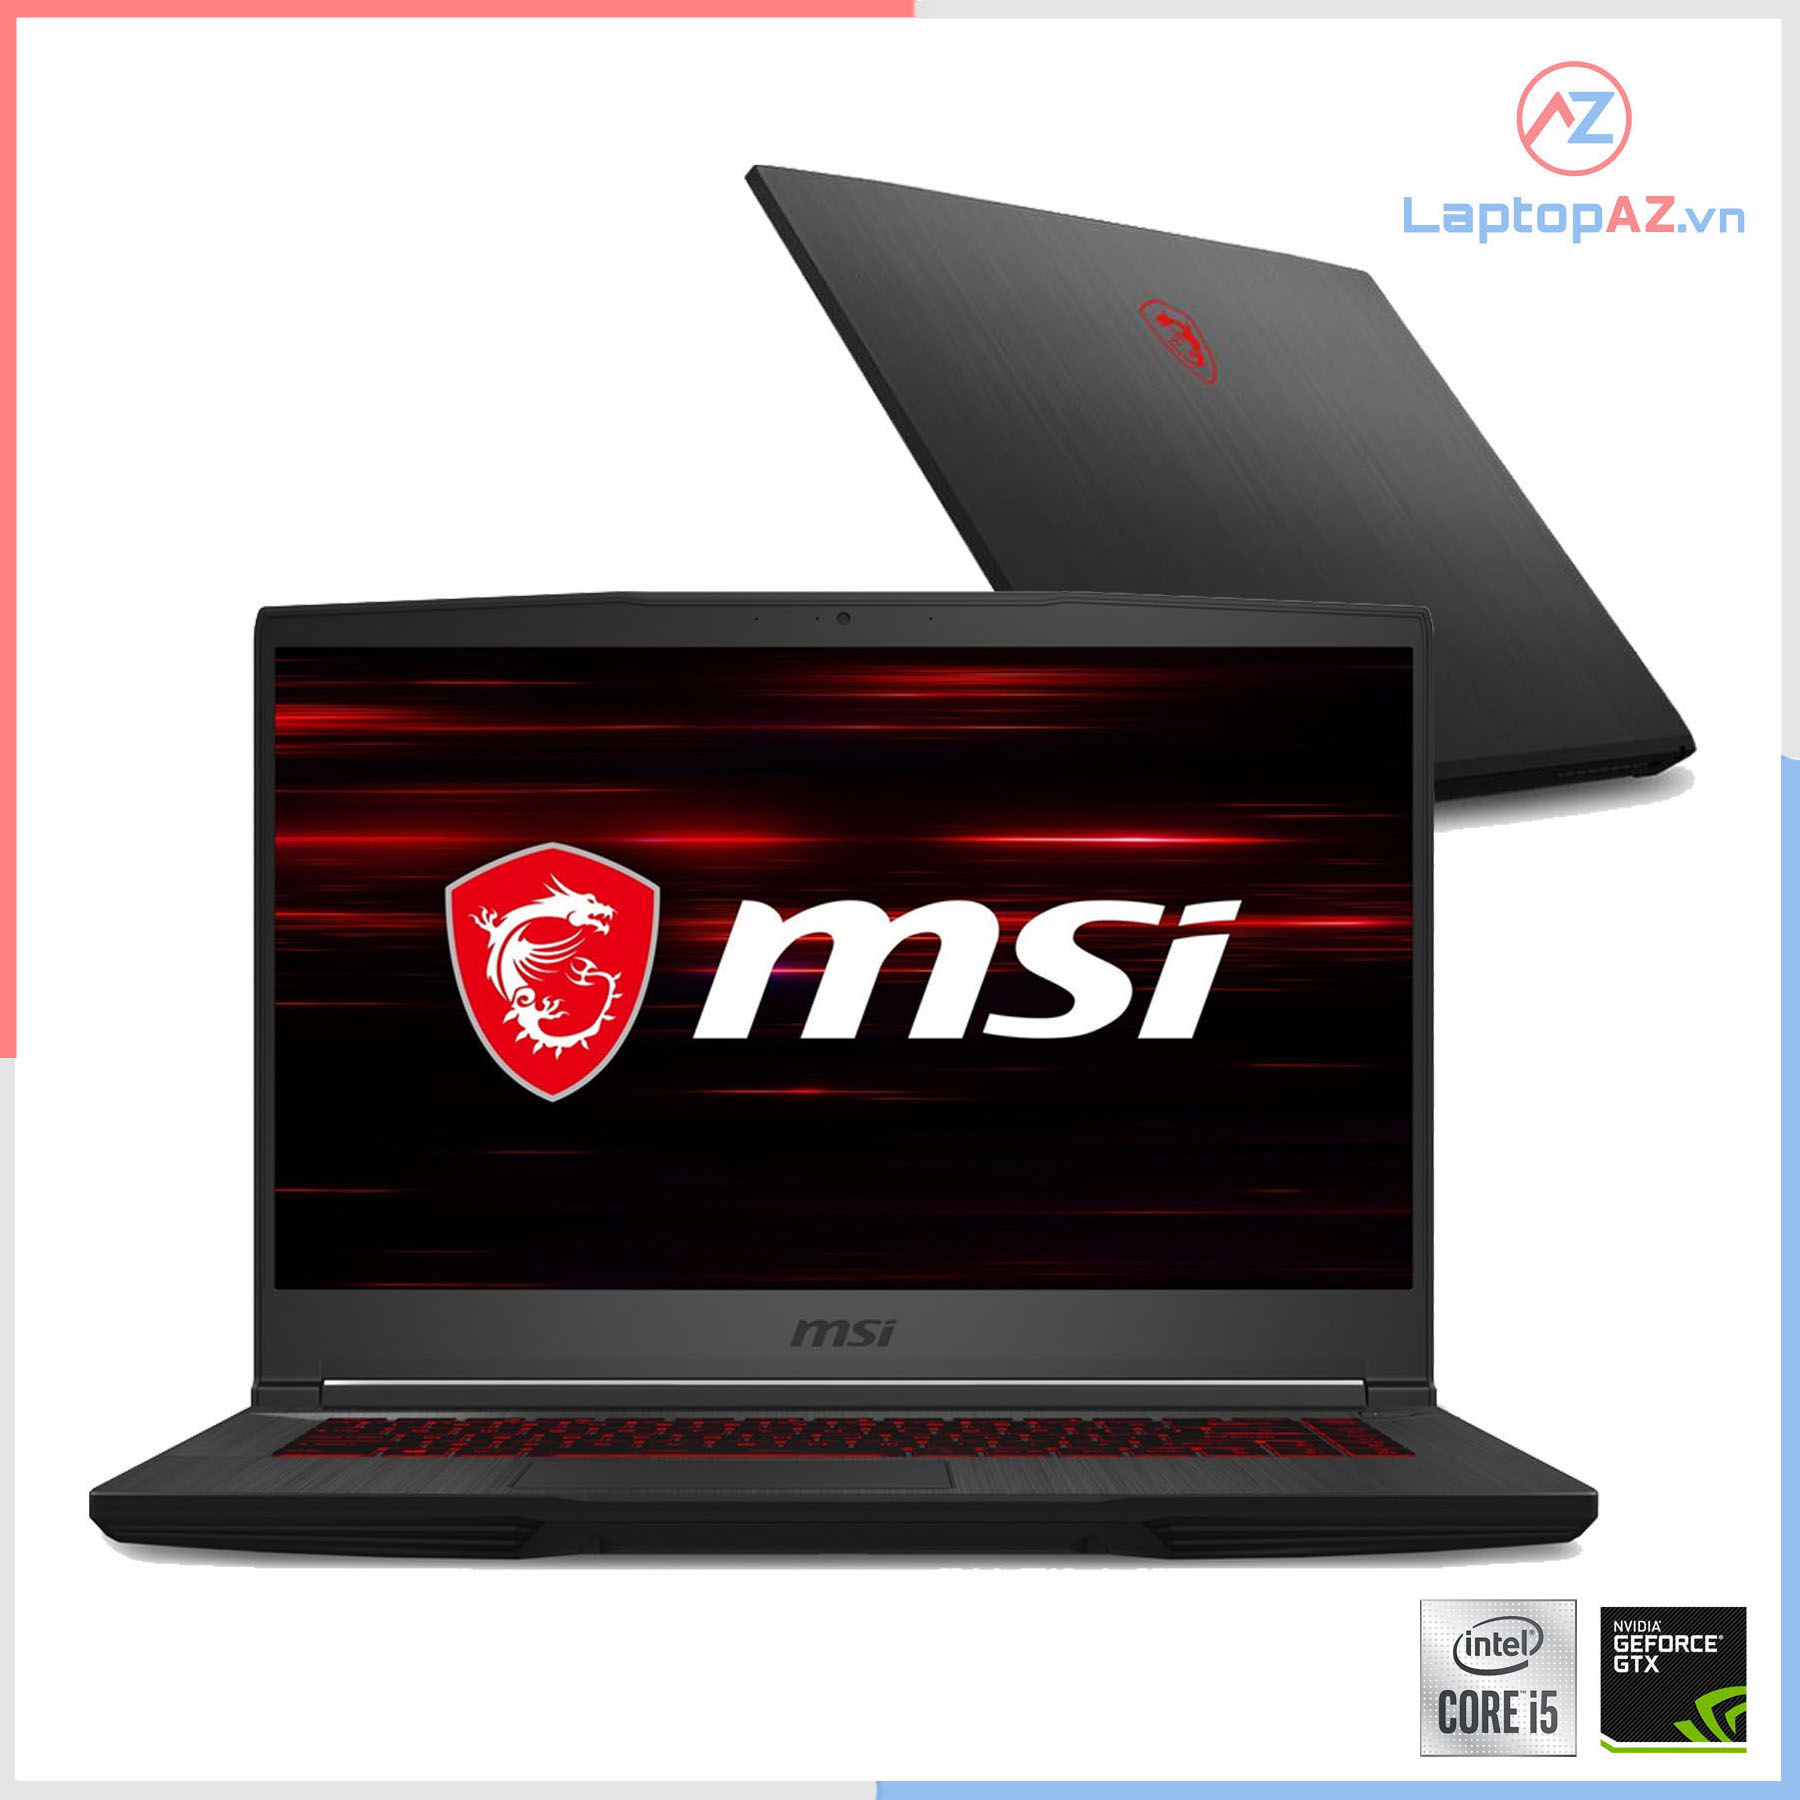 [Mới 100%] Laptop MSI GF75 Core i5 9300H, 8GB, 256GB, VGA 4GB GTX 1650, 17.3' FHD